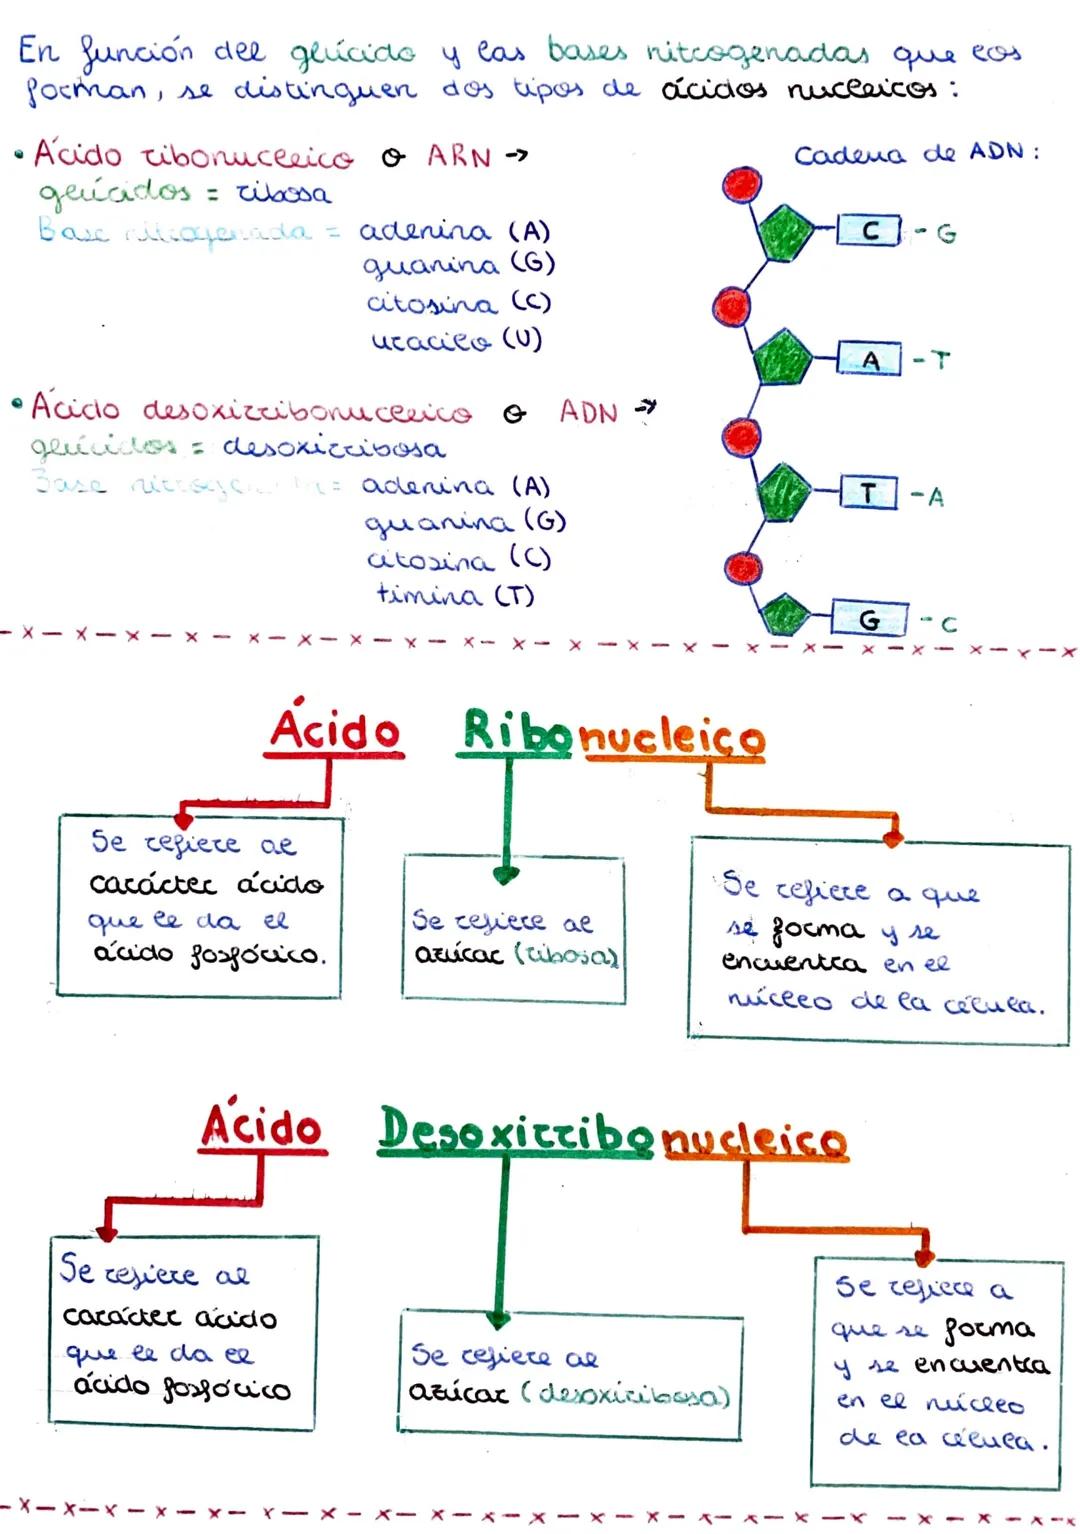 Los ácidos nucleicos son maccomoléculas orgánicas
implicadas en todos los procesos de almacenamiento
expresión de la información genética.
2